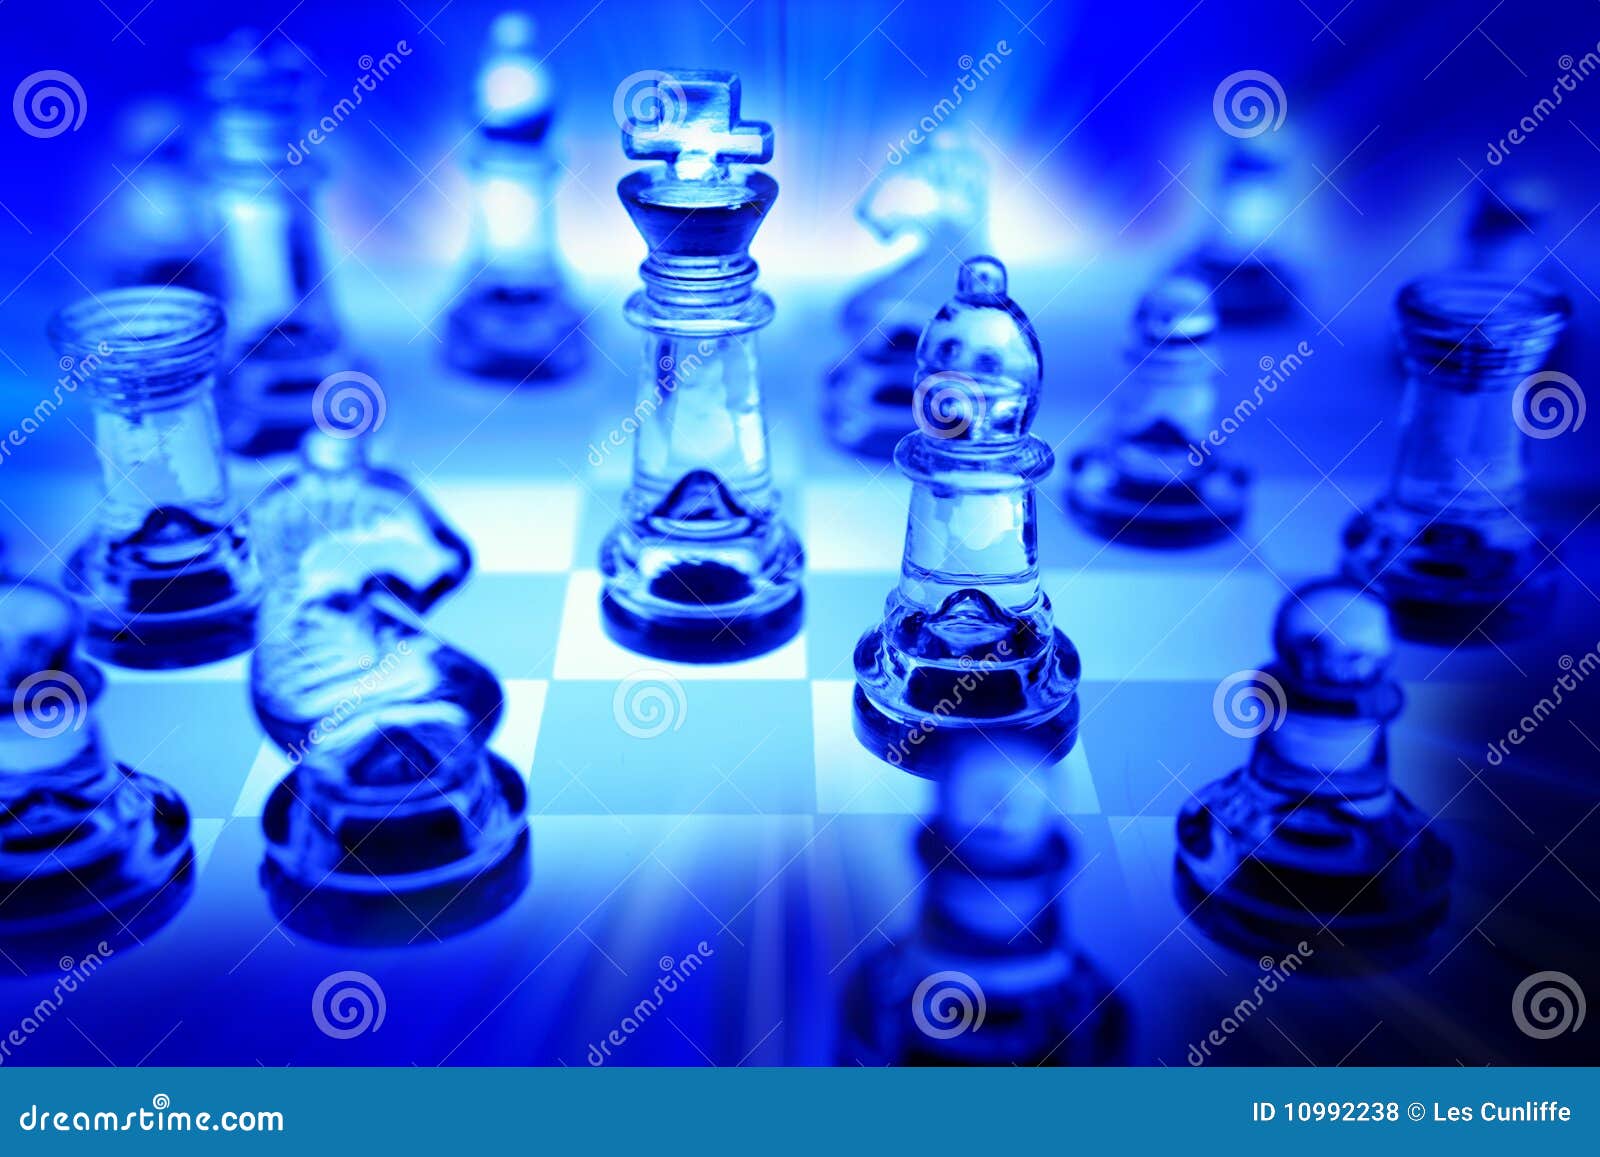 Jogo de xadrez no azul foto de stock. Imagem de passatempo - 10992238